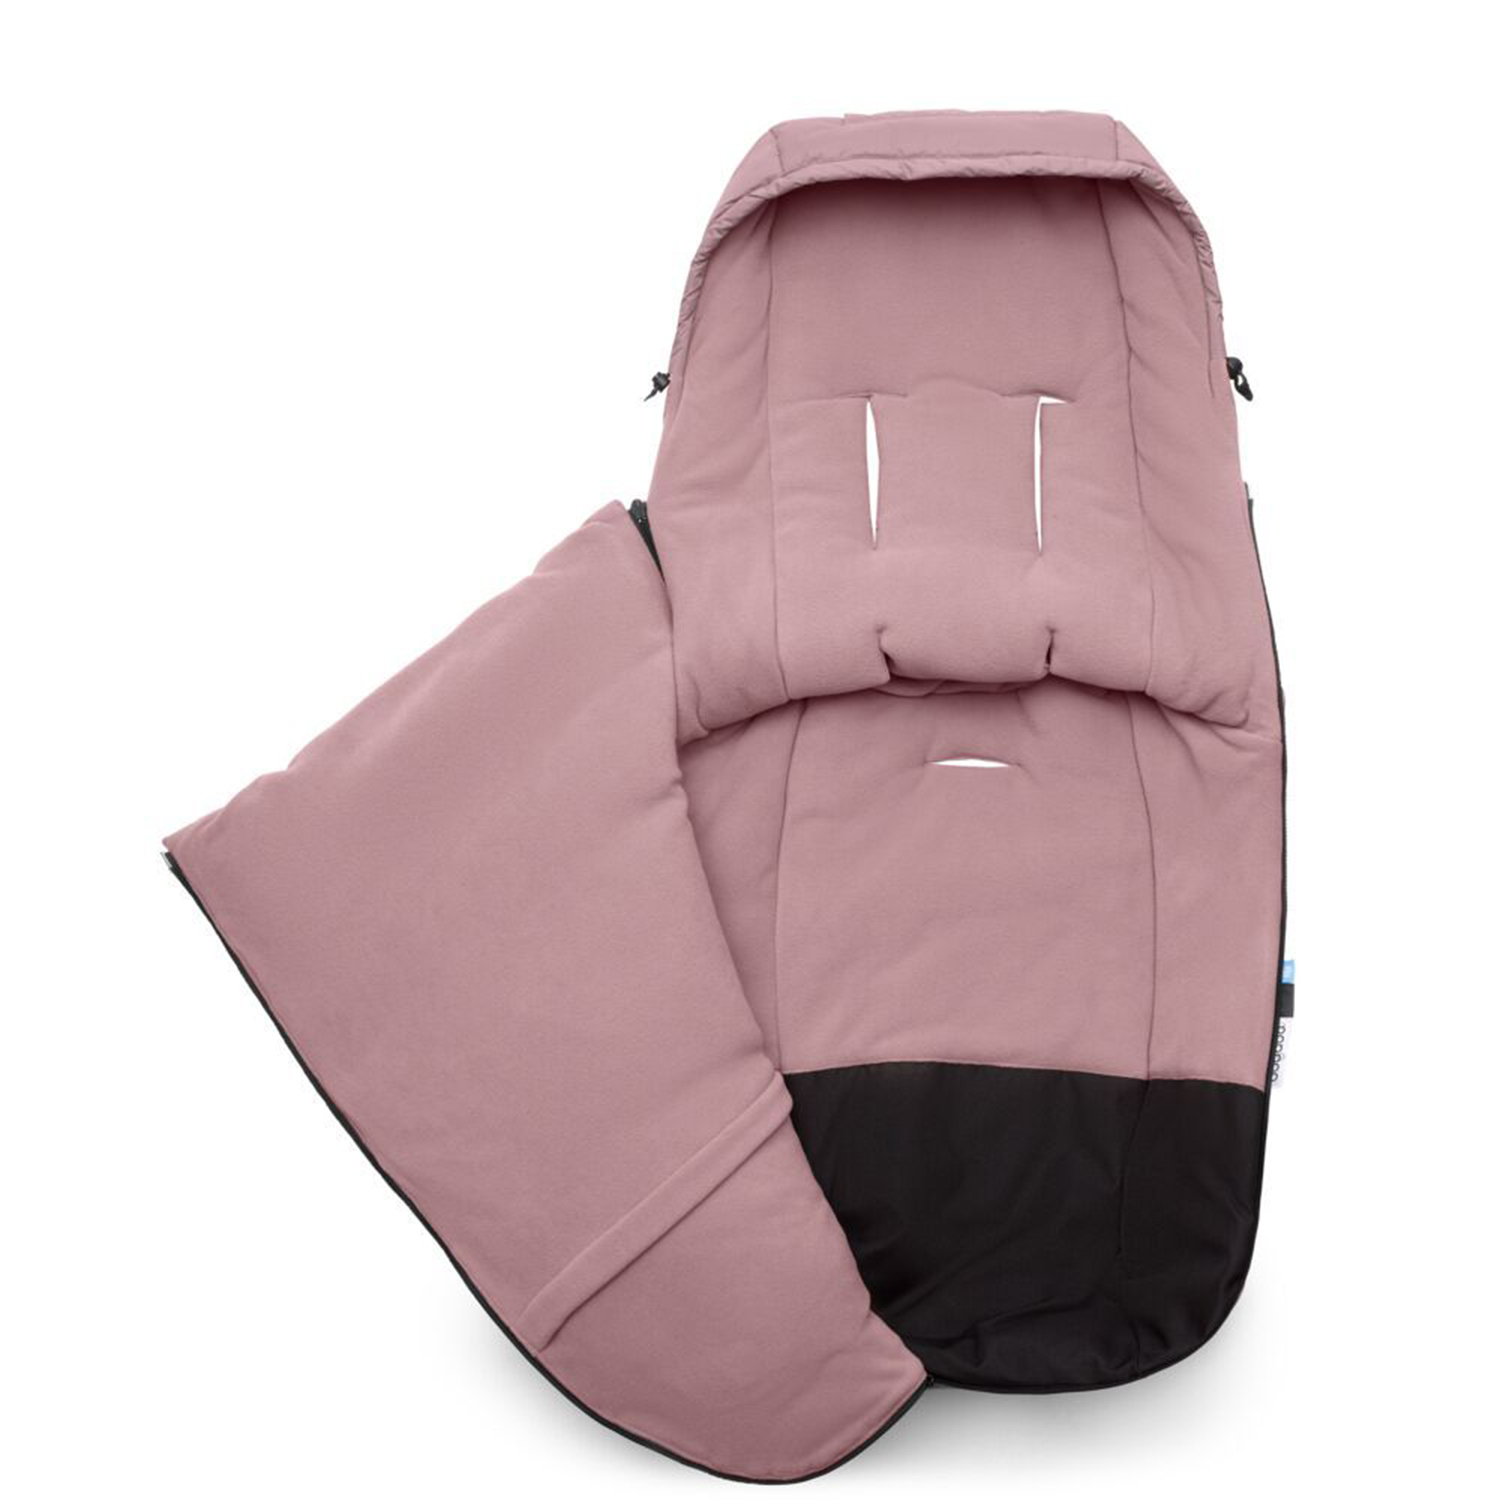 Зимний функциональный конверт в коляску, dune pink Bugaboo, цвет нет цвета - фото 3